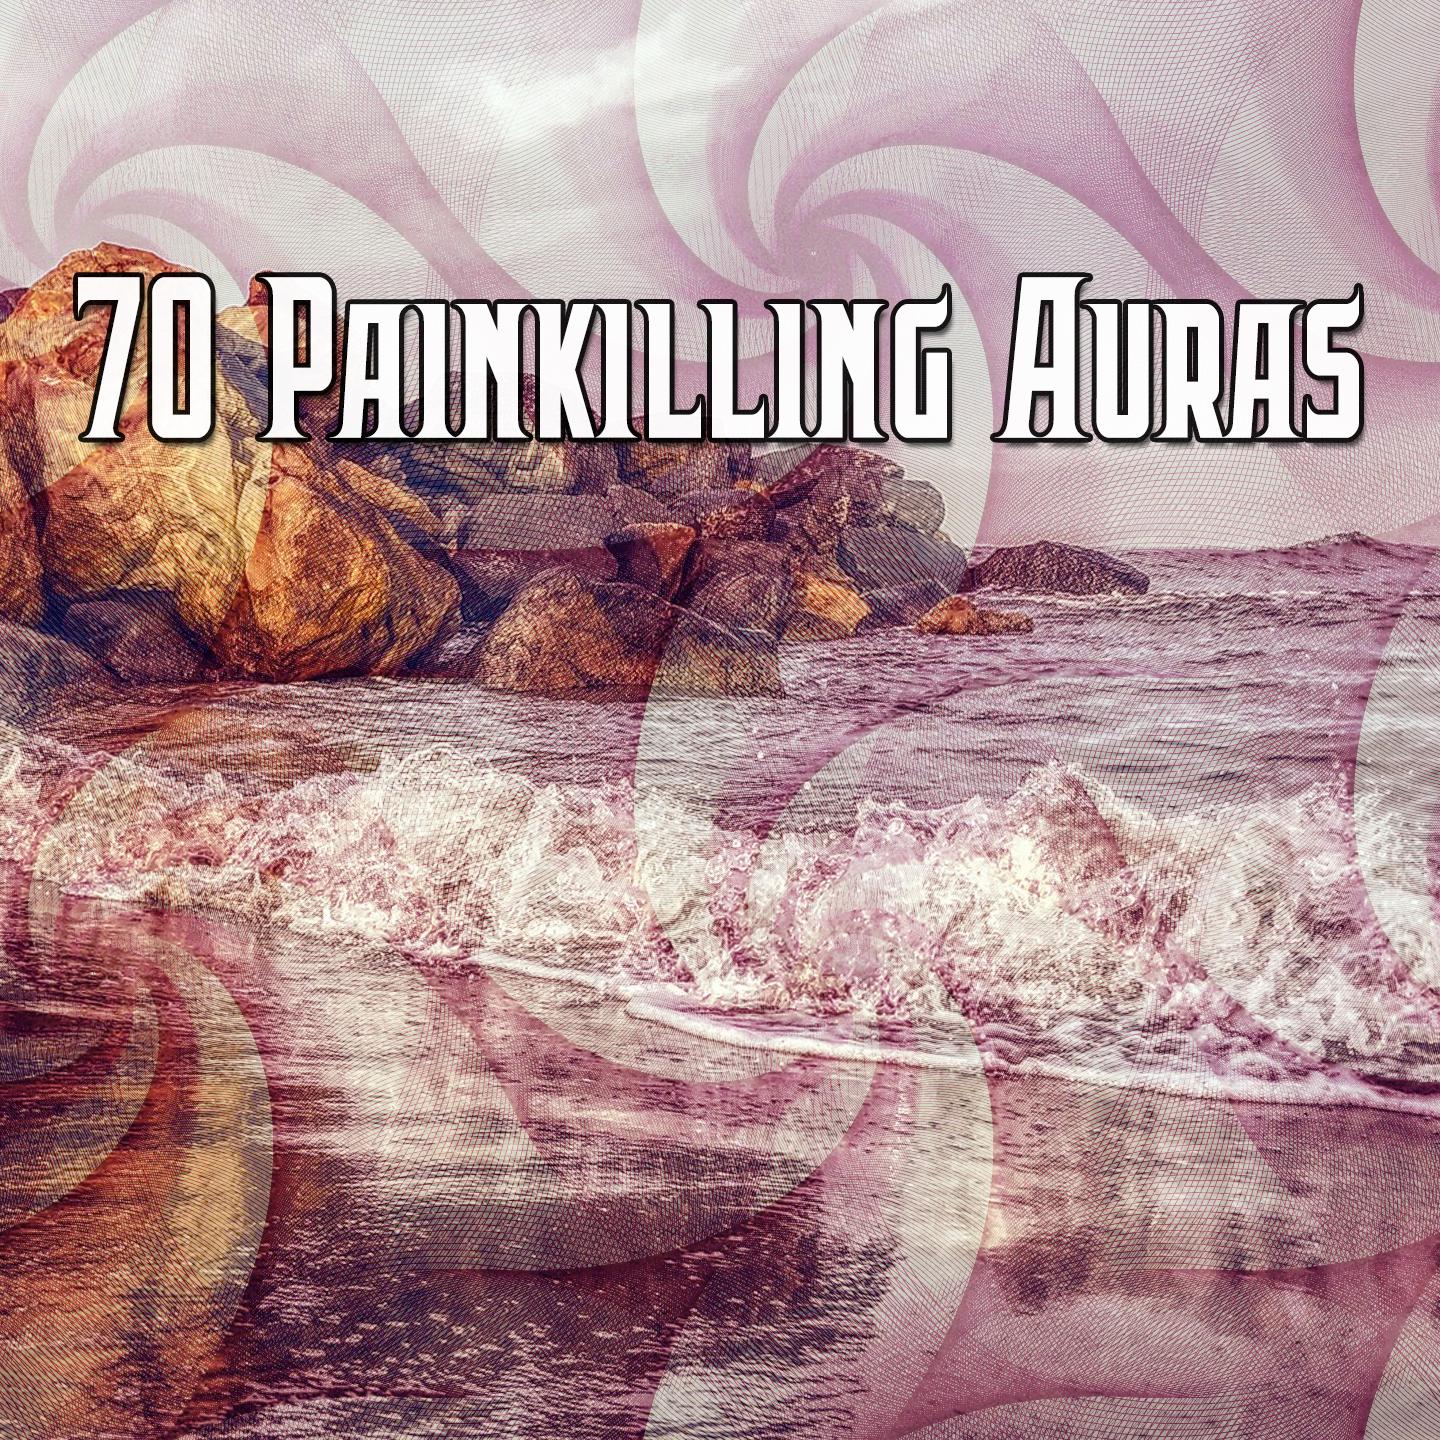 70 Painkilling Auras